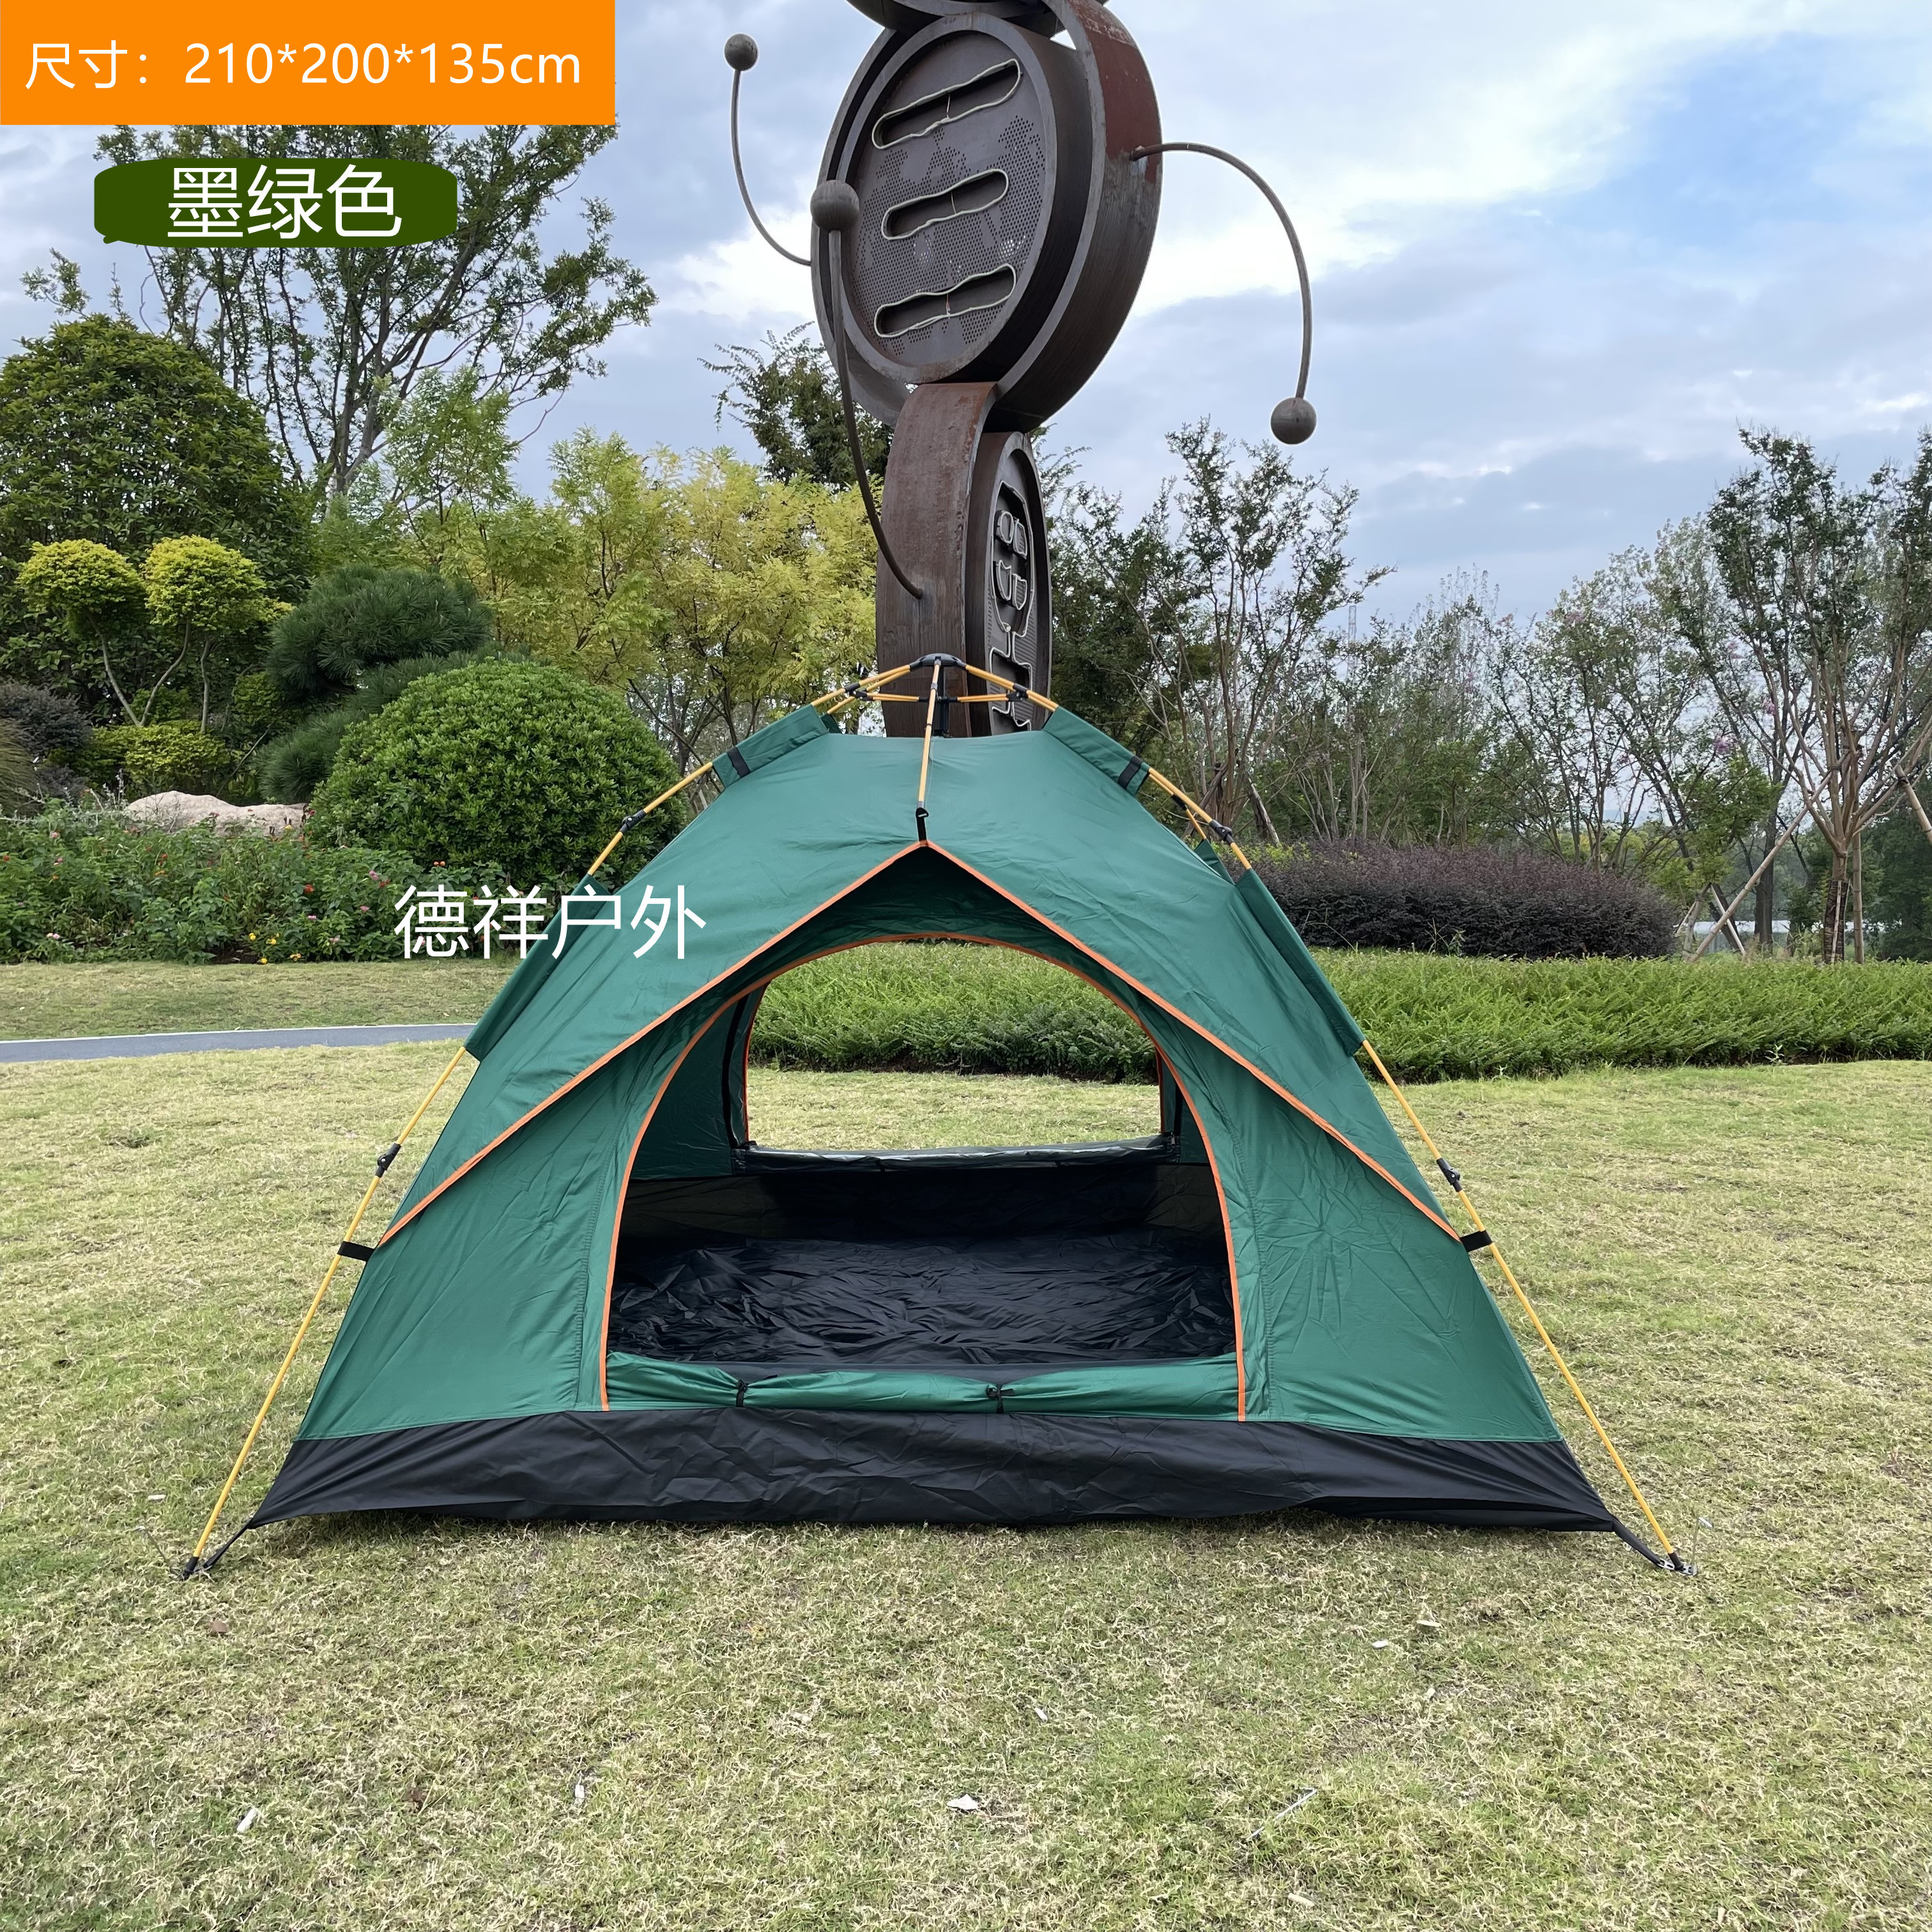 新版自动帐篷/双人自动帐篷/树叶自动帐篷产品图